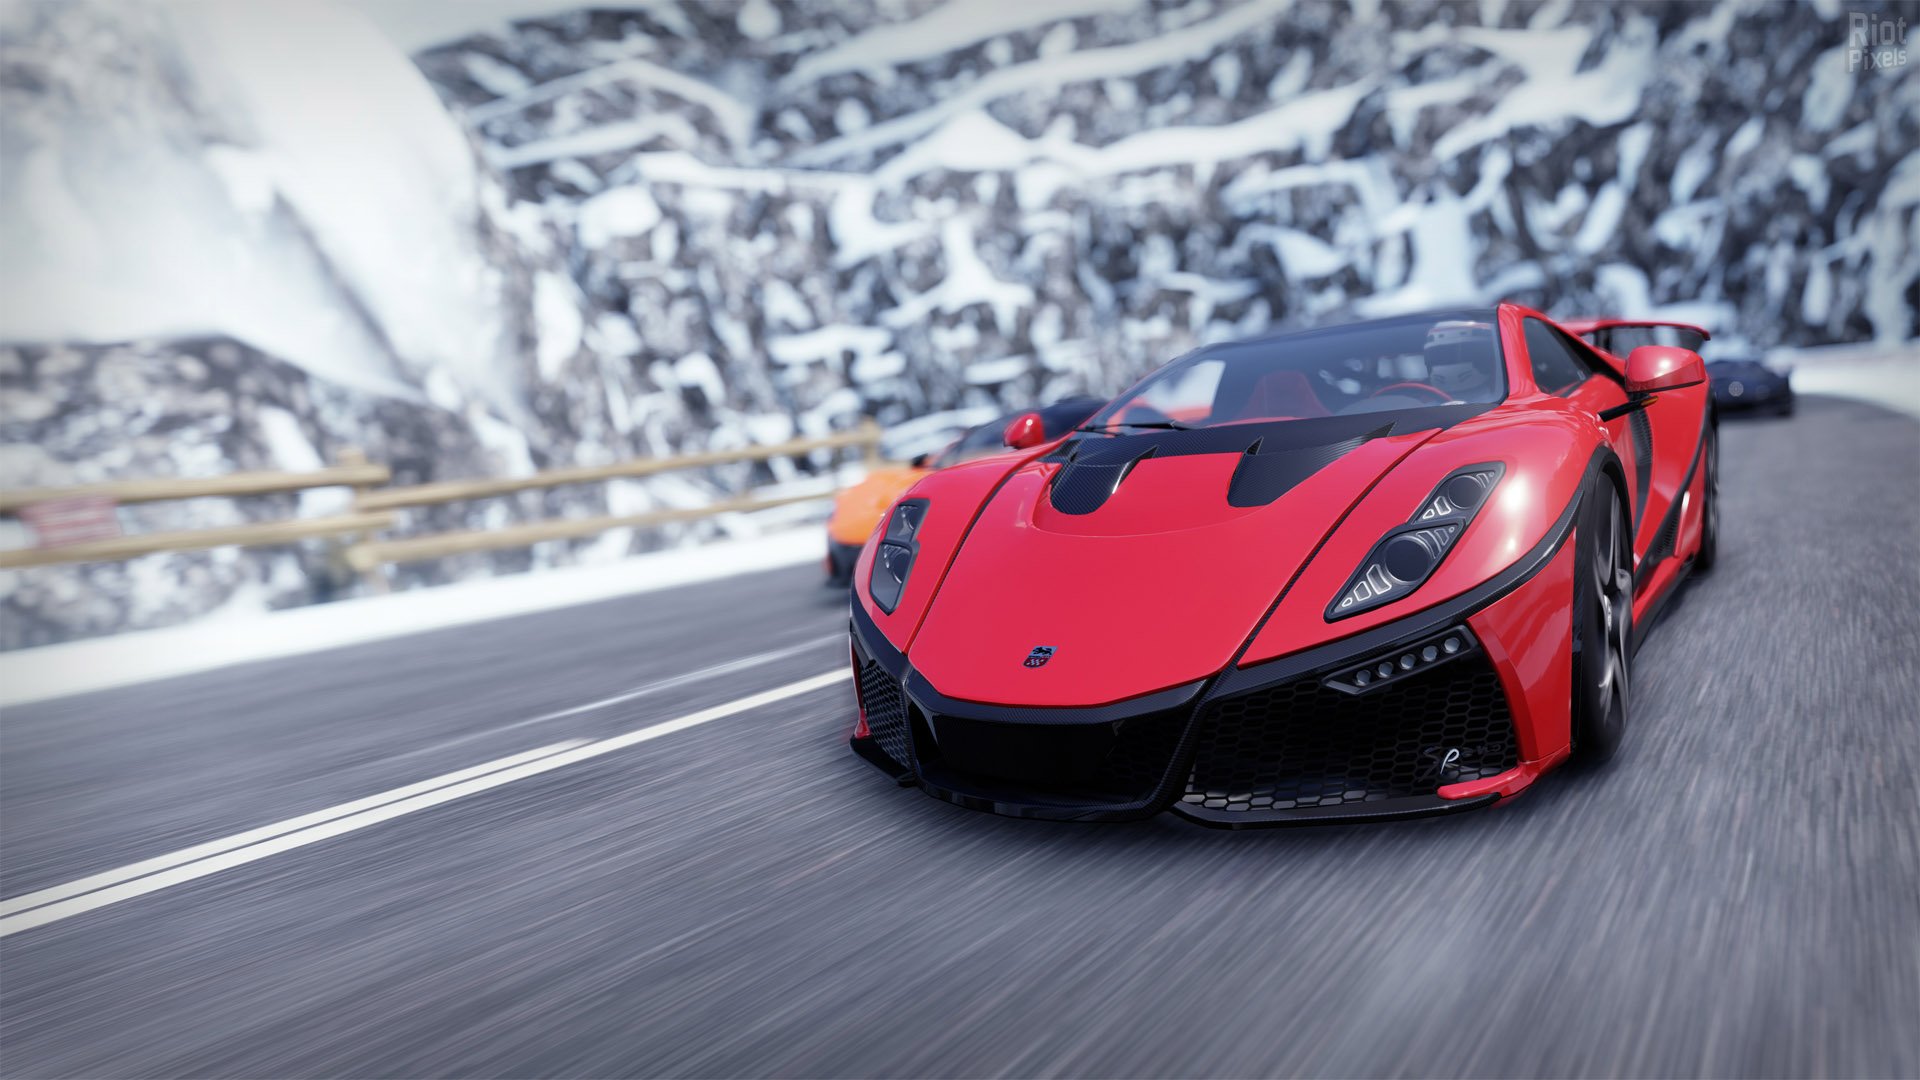 Gear.Club: jogo de corrida parecido com Forza Motorsport chega ao